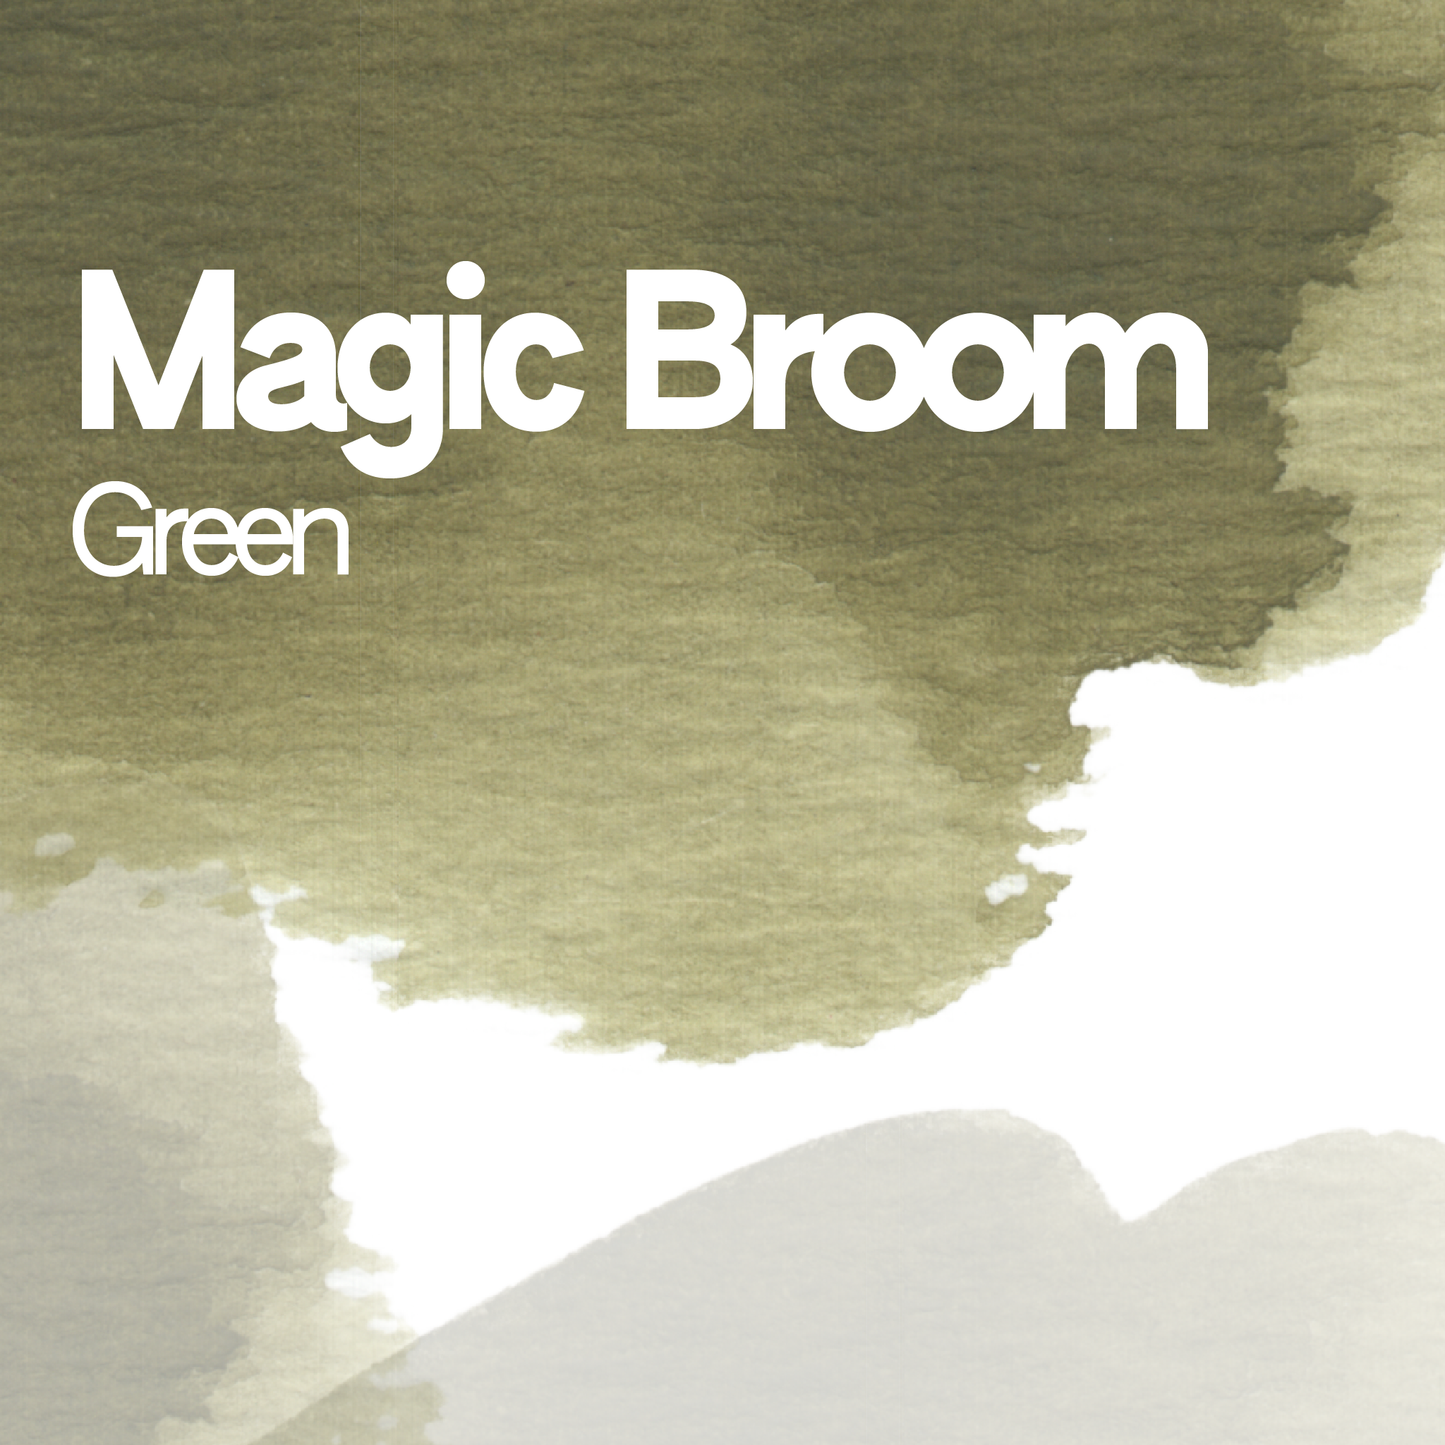 Magic Broom Green aquarelle artisanale vegan 